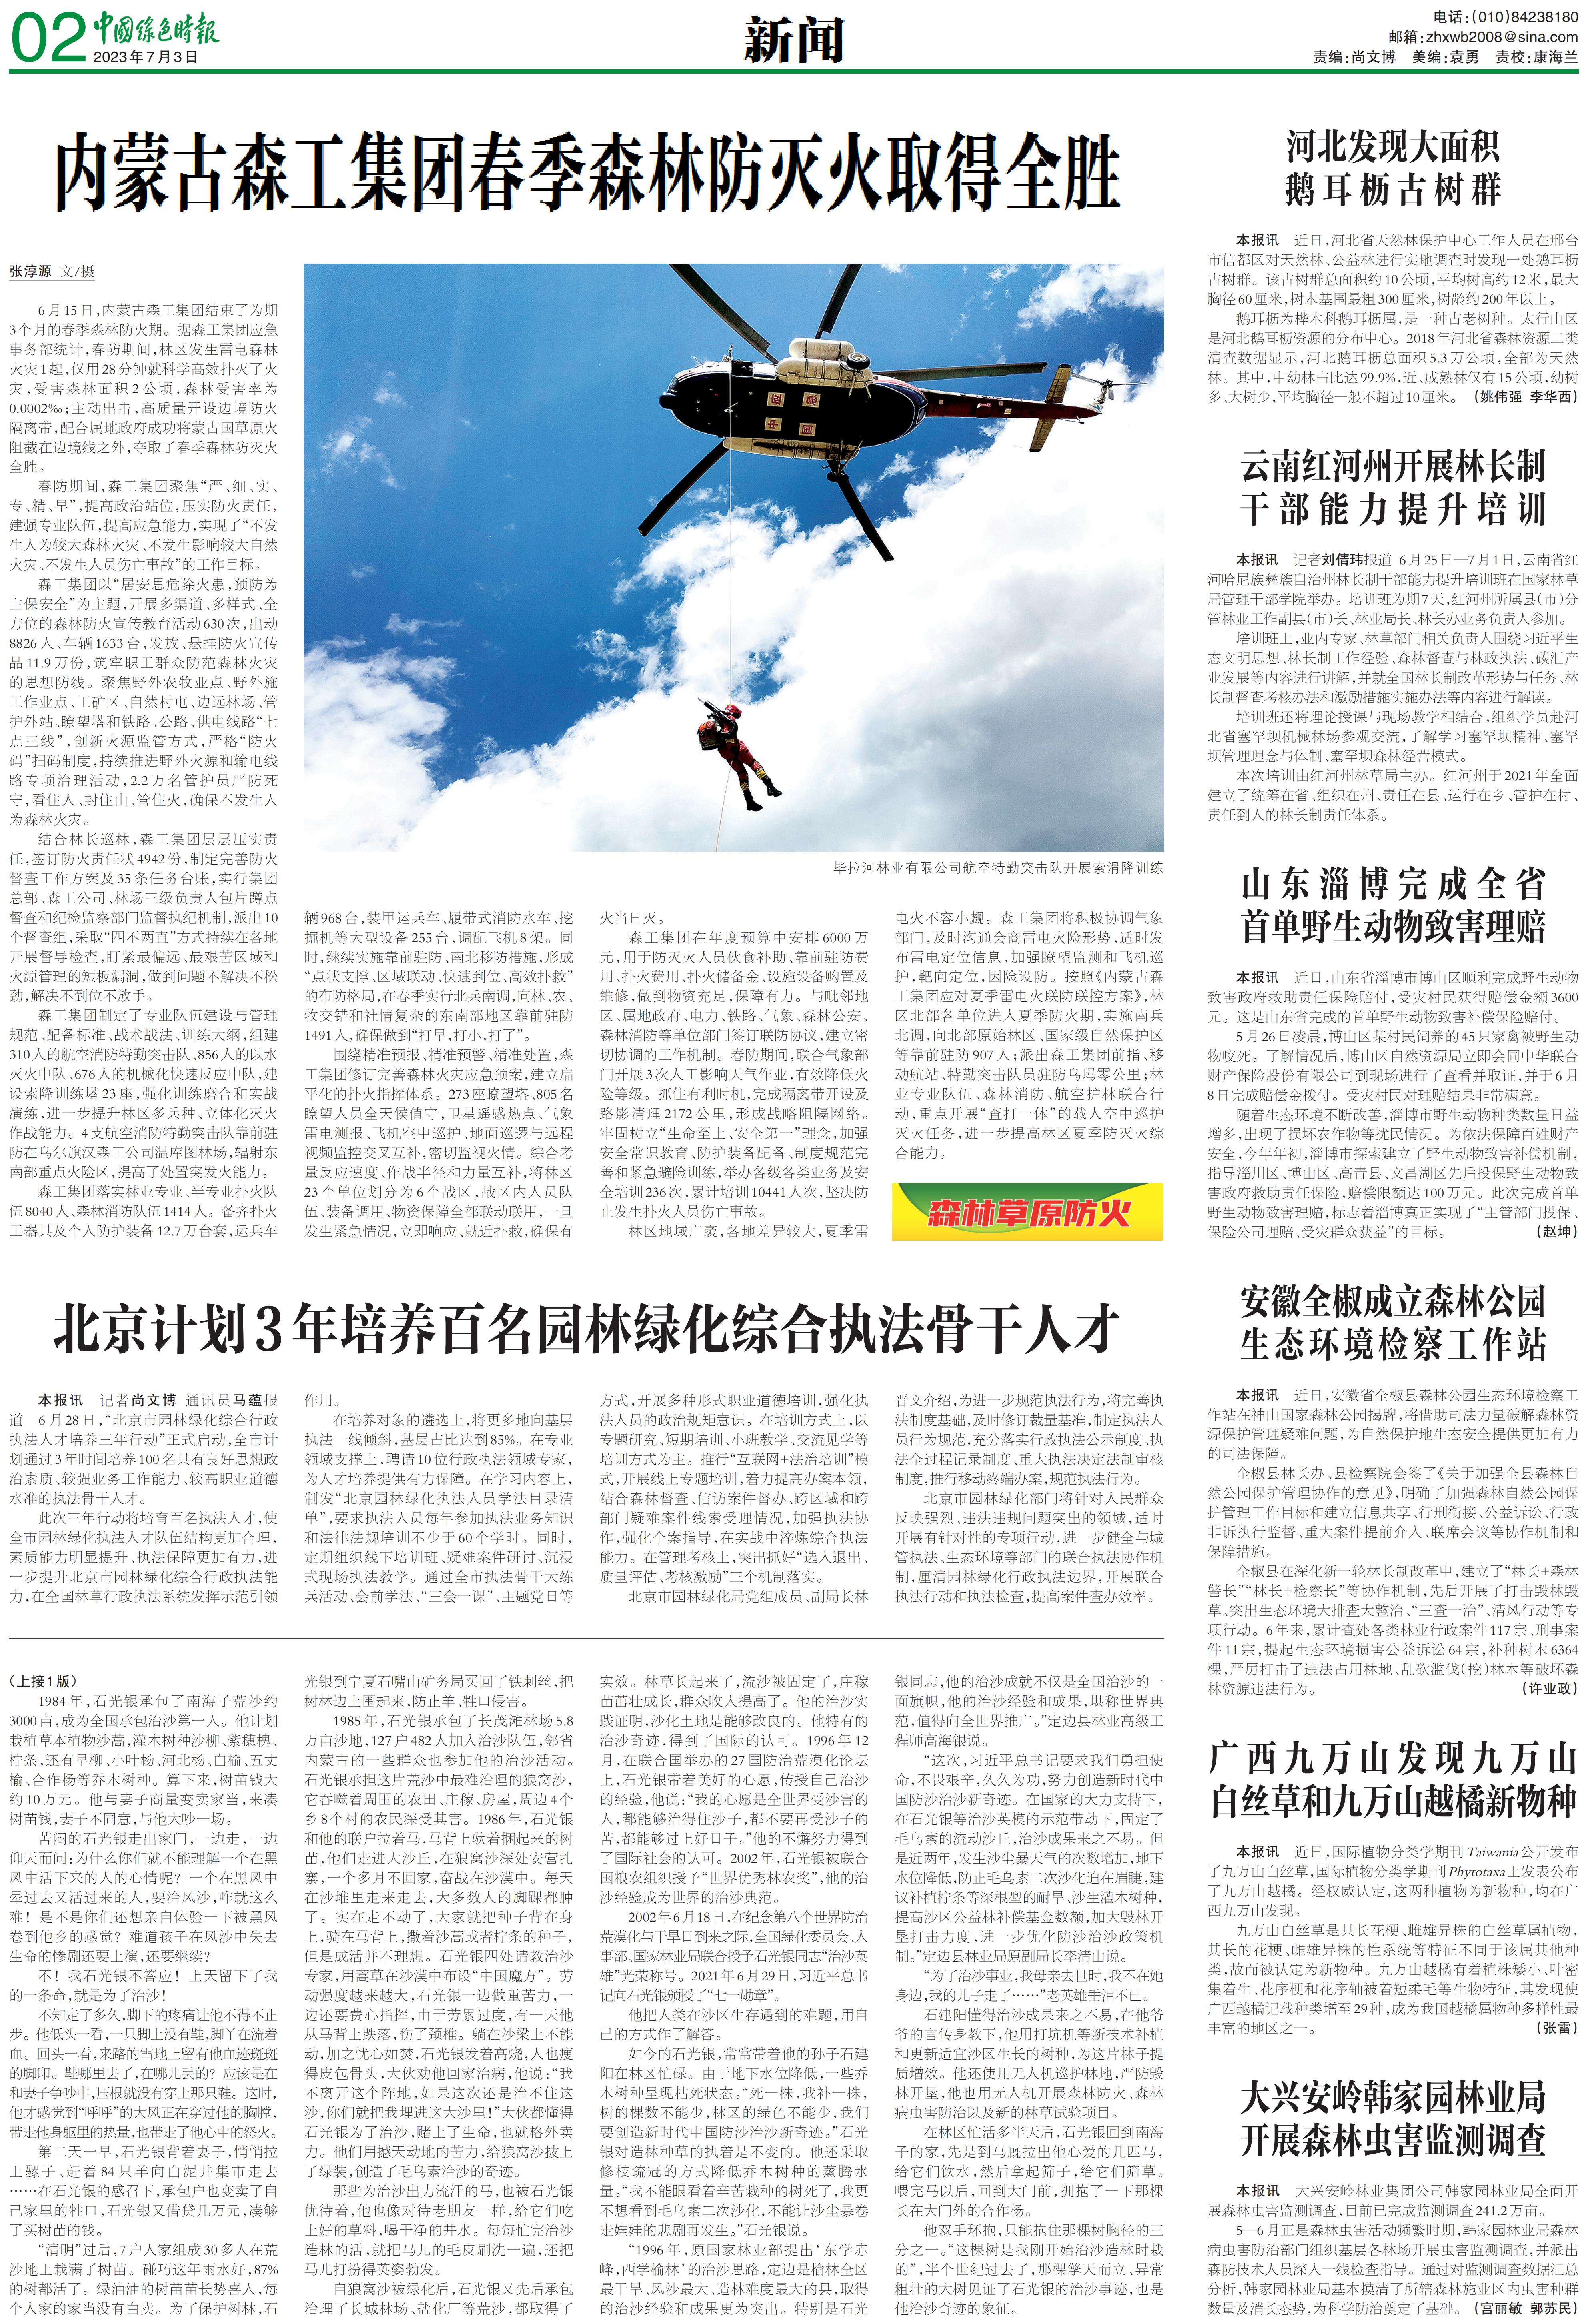 0703中国绿色时报-北京计划3年培养百名园林绿化综合执法骨干人才_00.jpg